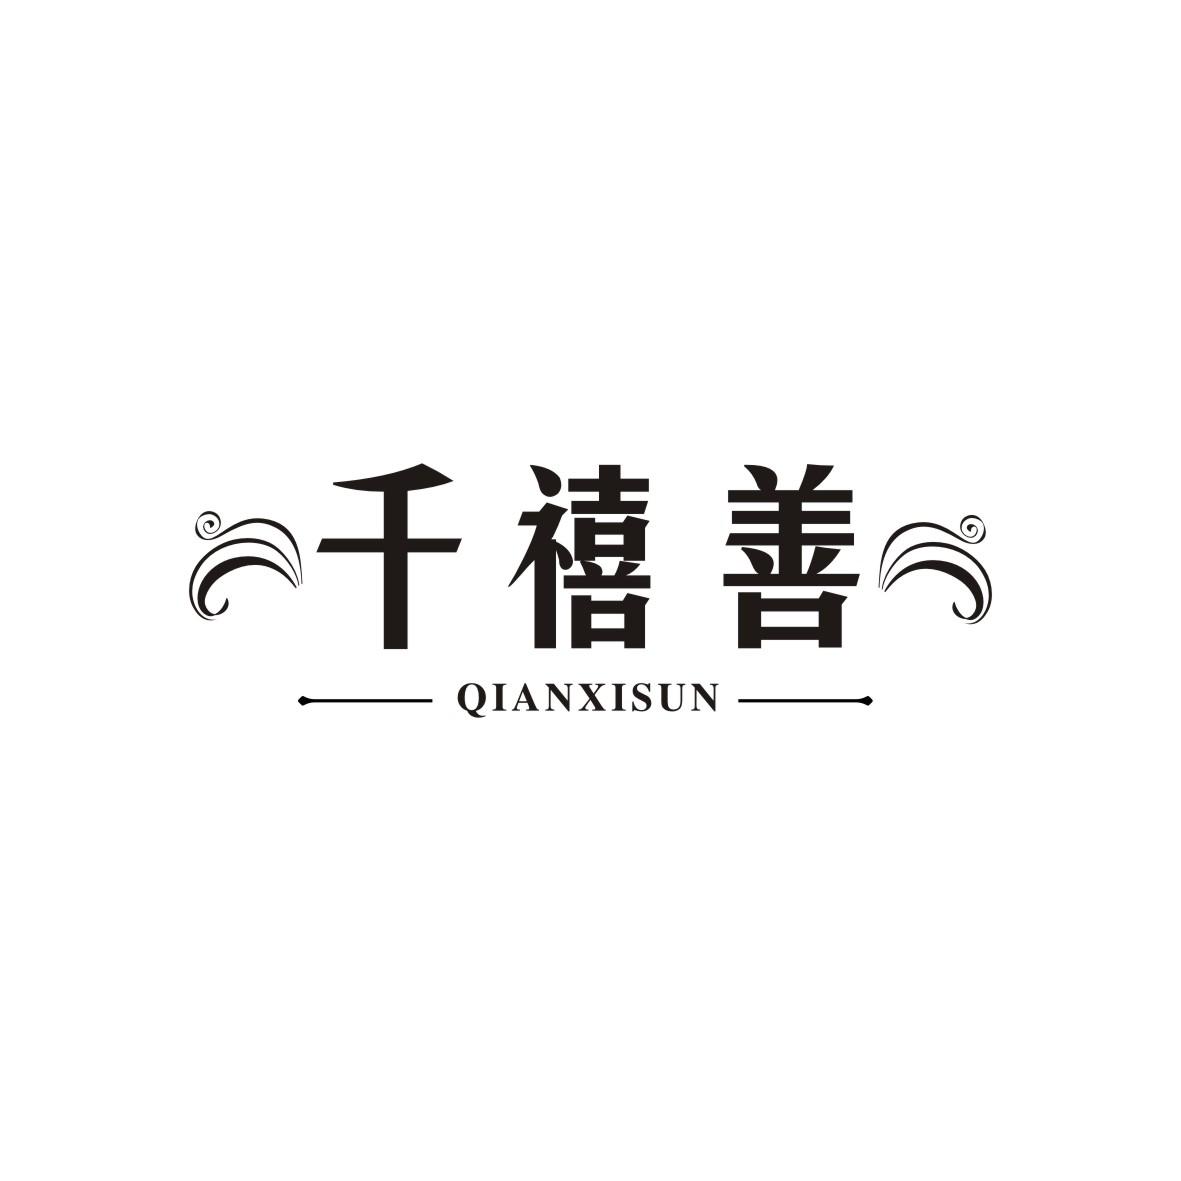 广州藏知品牌管理有限公司商标千禧善 QIANXISUN（14类）多少钱？商标图样1